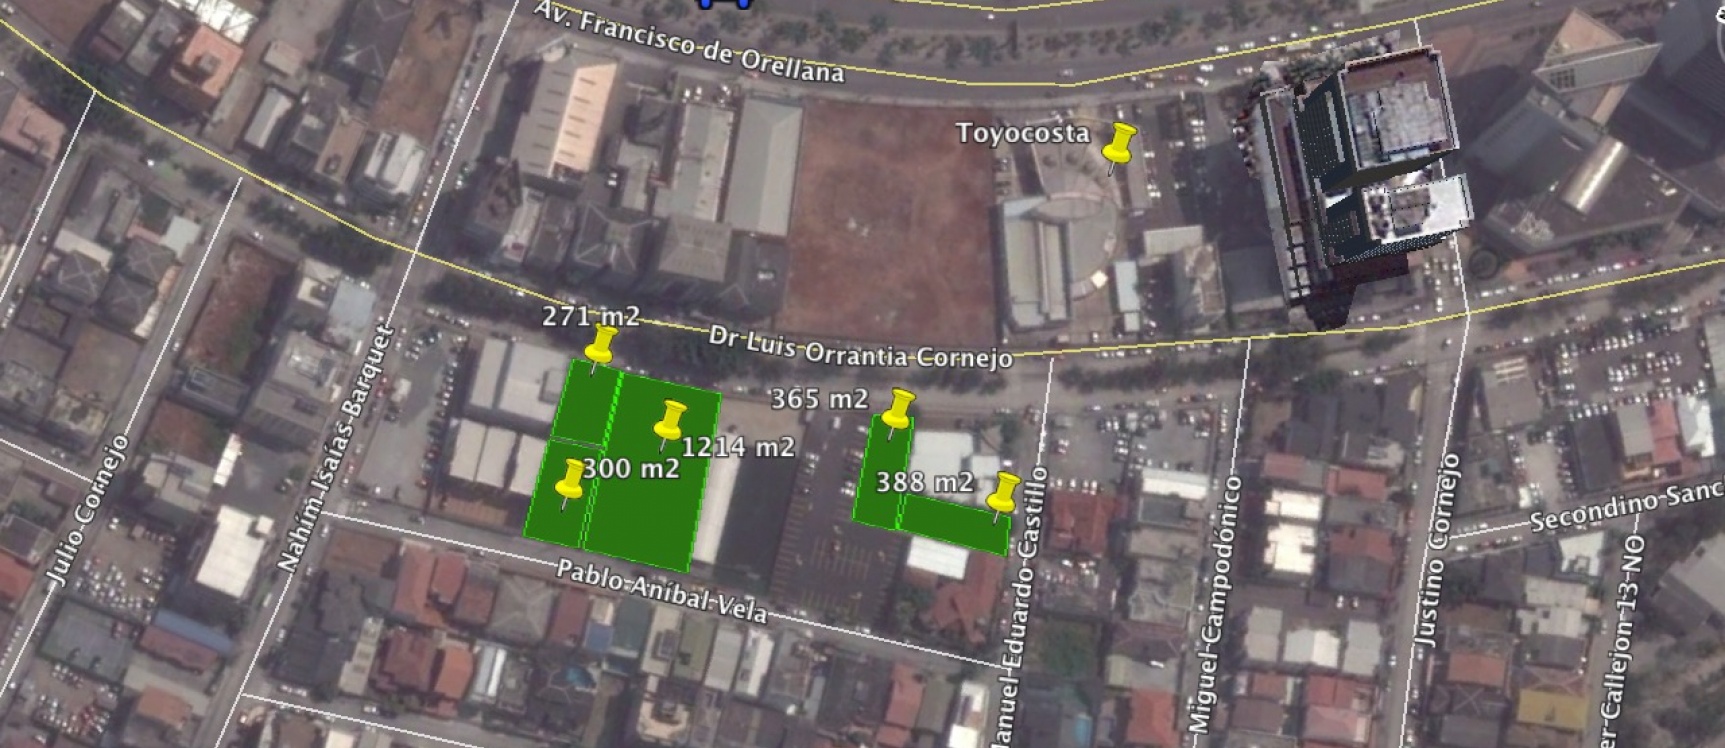 GeoBienes - Terrenos en alquiler en el Norte de Guayaquil 388 m2 sector Kennedy Norte - Plusvalia Guayaquil Casas de venta y alquiler Inmobiliaria Ecuador